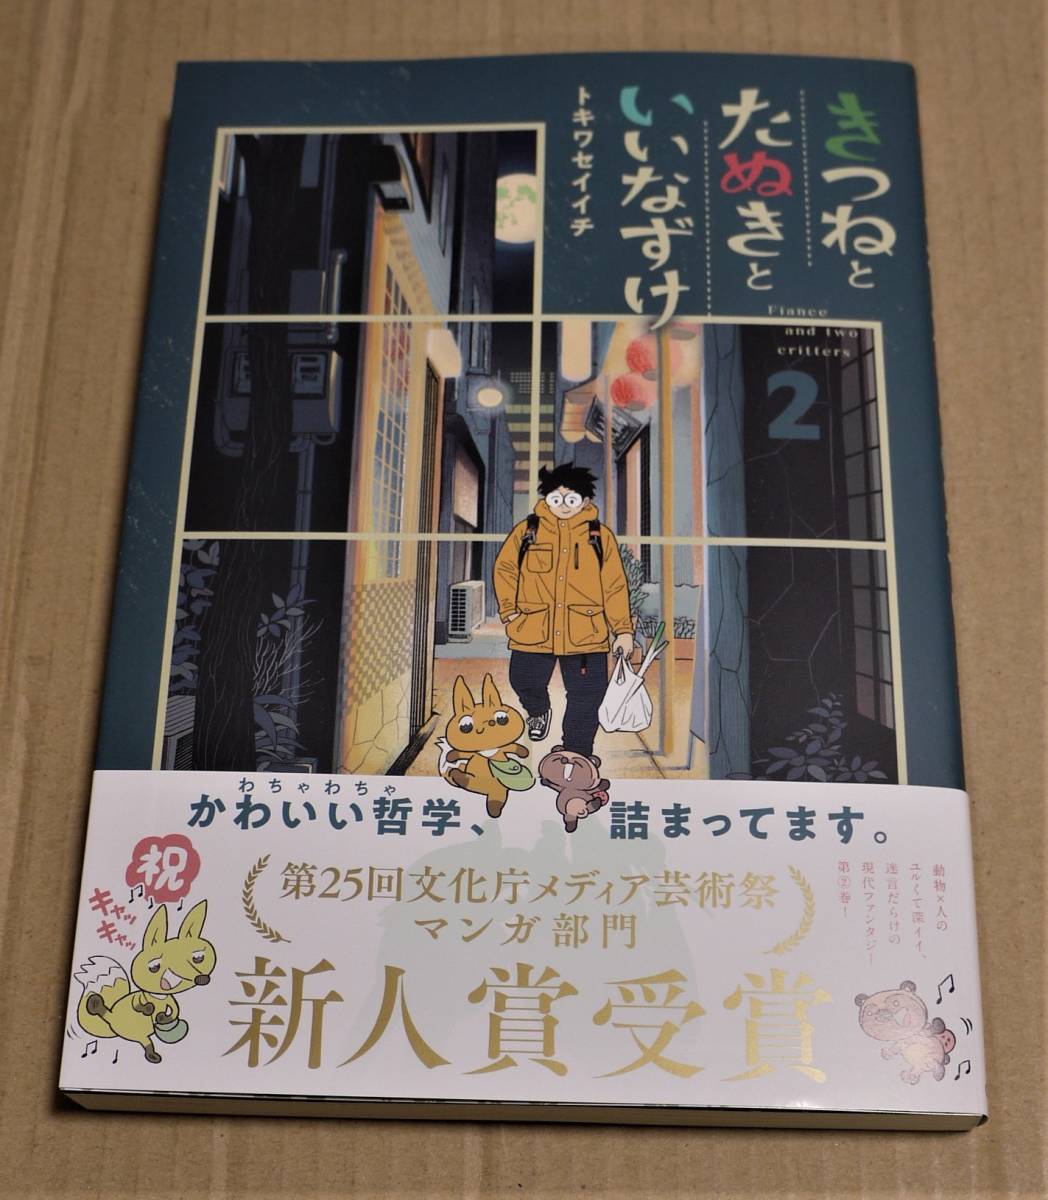 الرسوم التوضيحية والتوقيعات المرسومة باليد الثعلب, تانوكي والكلب, المجلد 2 (Tokiwaseichi) يتضمن الشحن Clickpost, كاريكاتير, سلع الانمي, لافتة, اللوحة المرسومة باليد